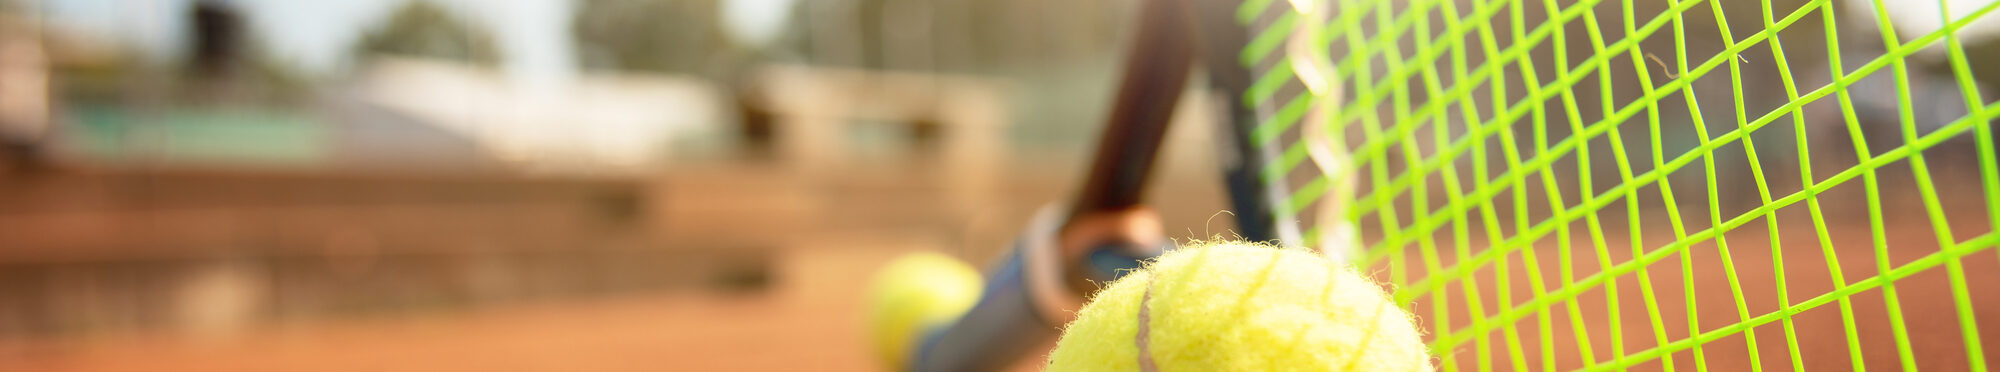 Tennisschläger und Ball nah